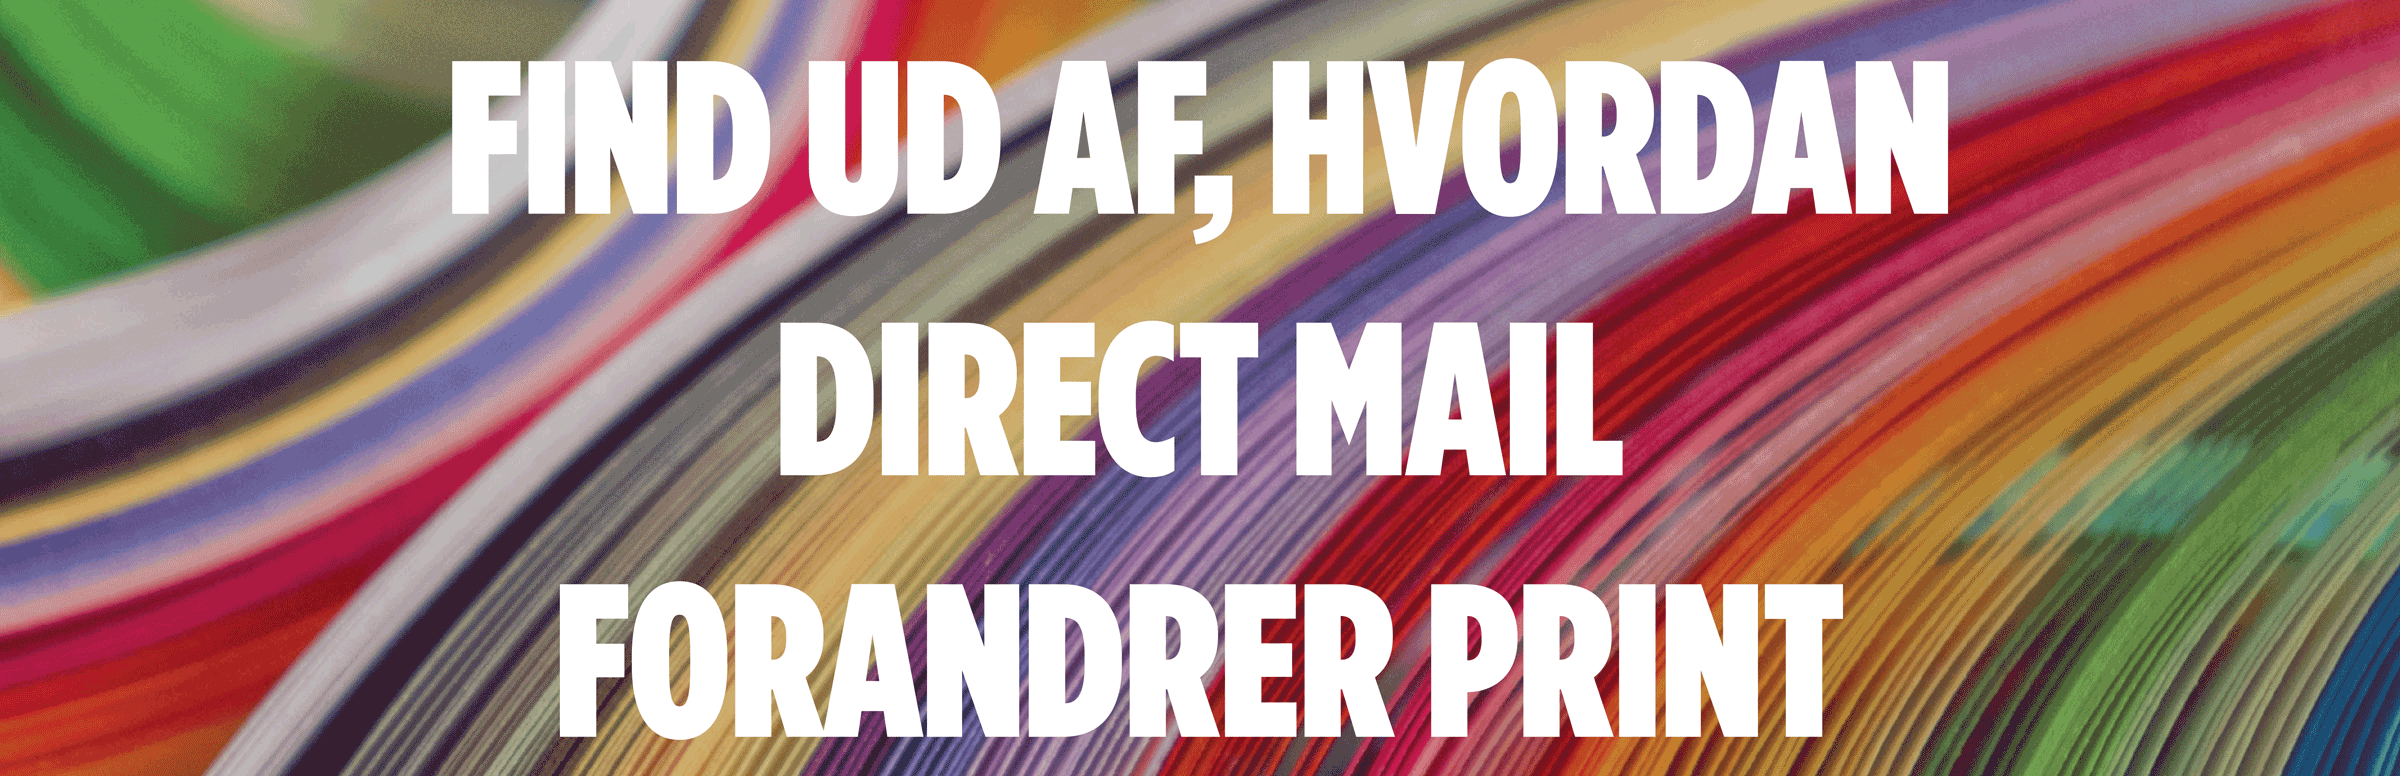 Find Ud Af, Hvordan Direct Mail Forandrer Print